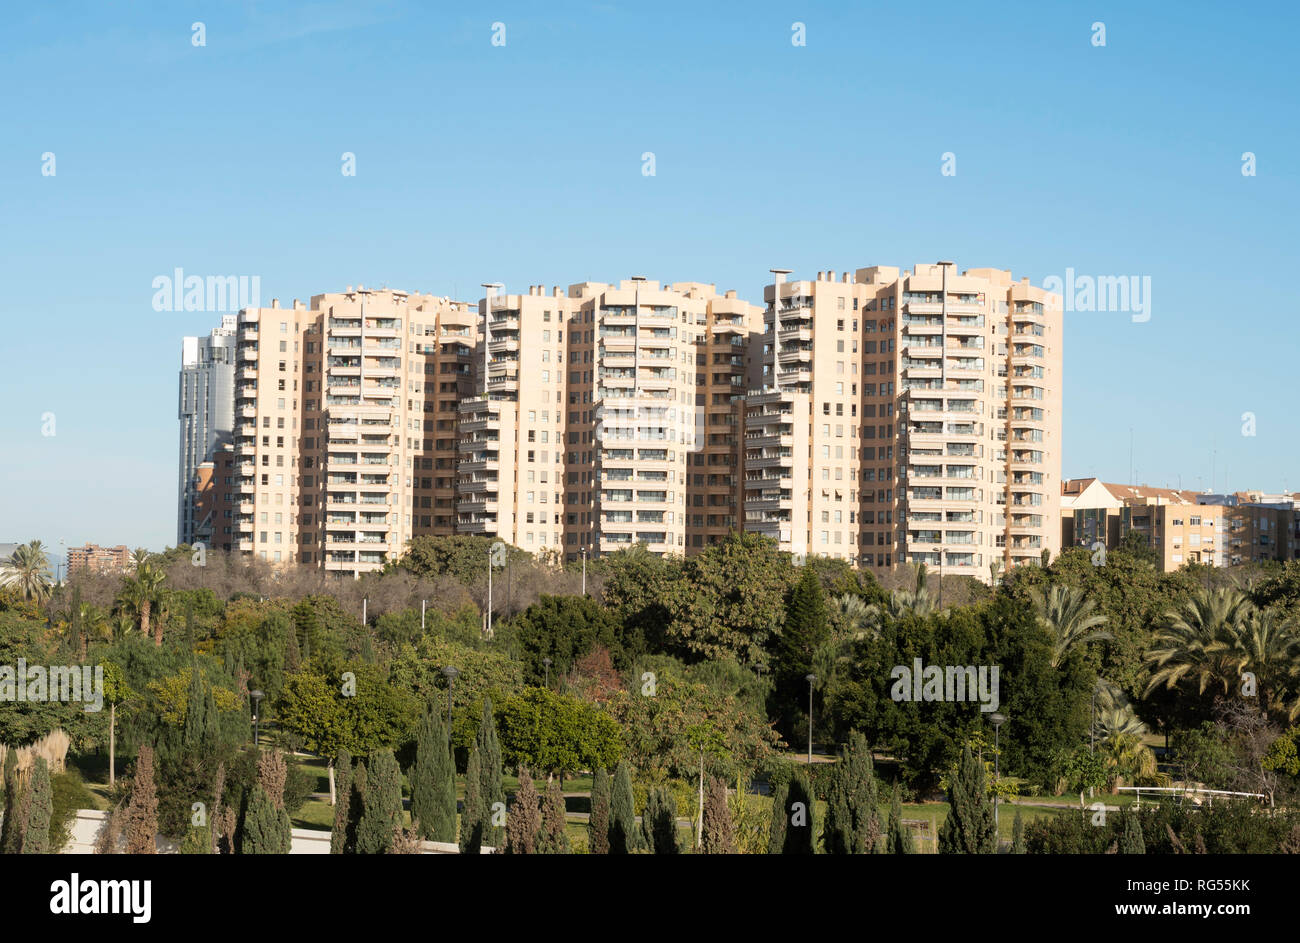 Les immeubles à appartements à Valence, Espagne, Europe Banque D'Images